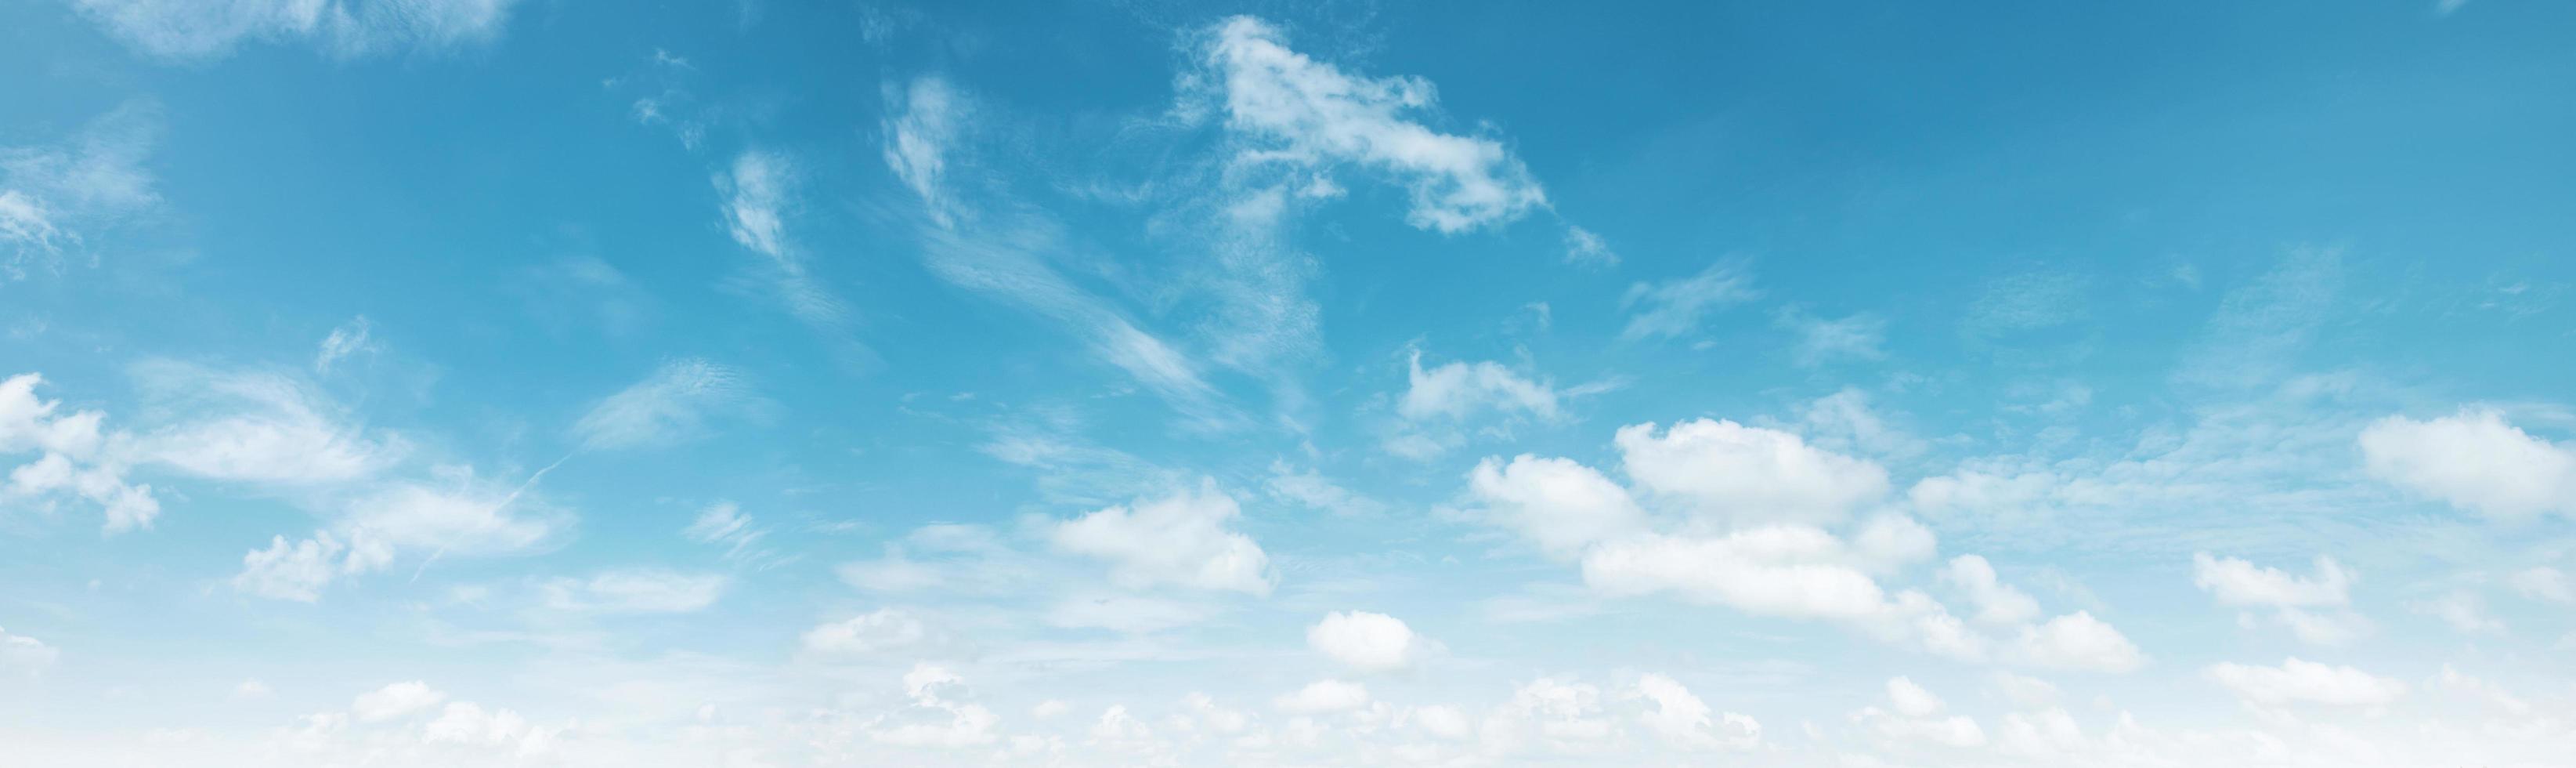 blauwe lucht met witte wolkenlandschapsachtergrond foto